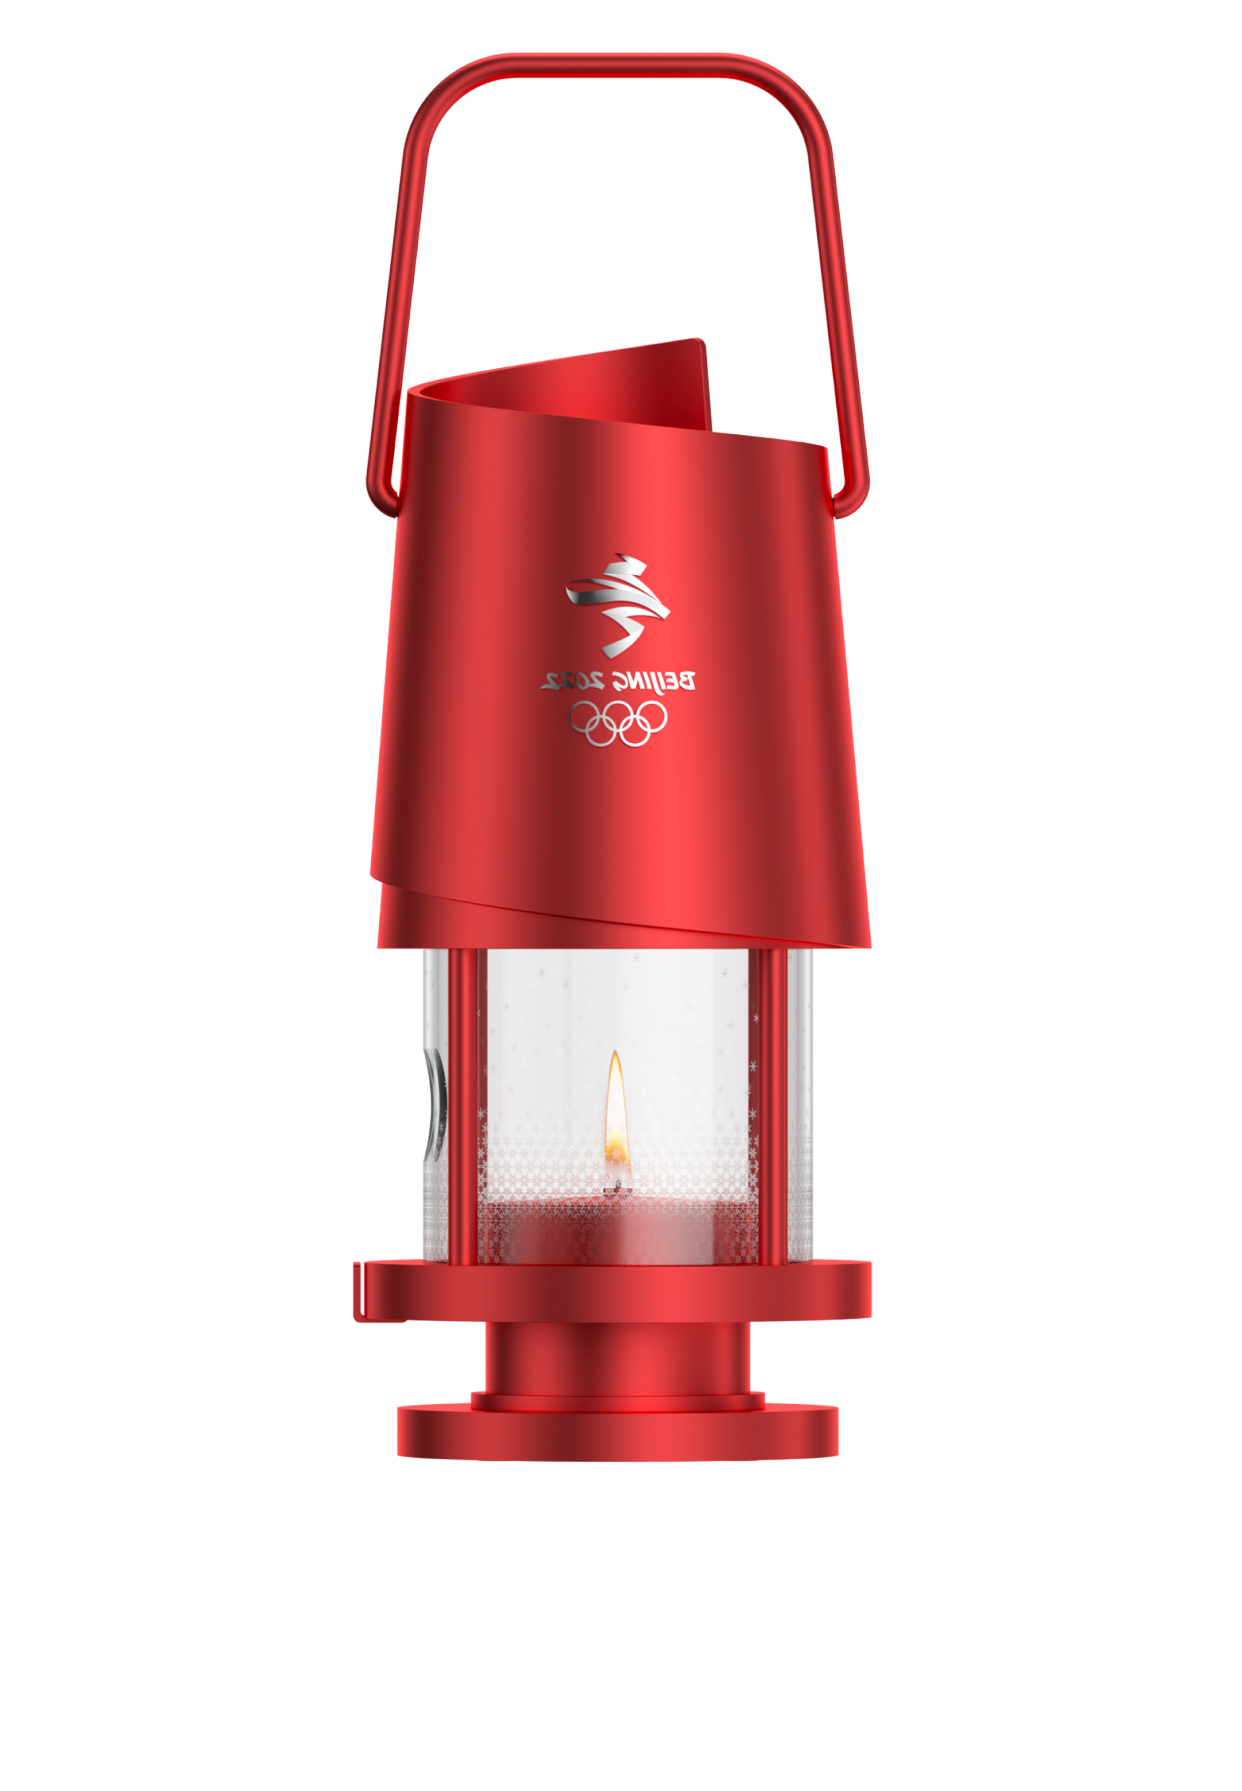 北京2022年冬奥会火种灯